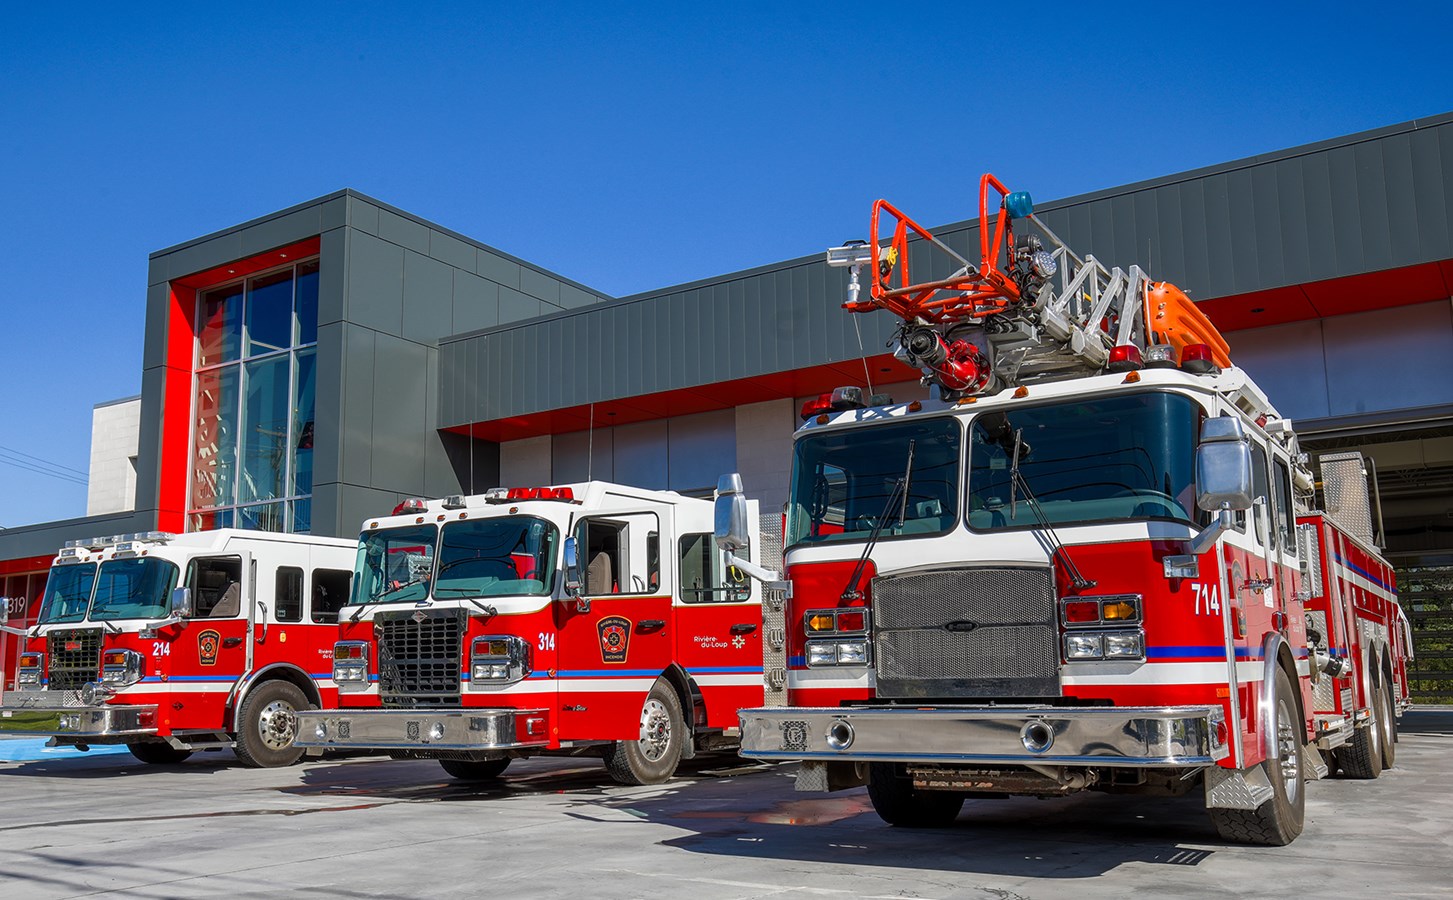 Reprise des visites résidentielles préventives du Service de sécurité incendie de Rivière-du-Loup